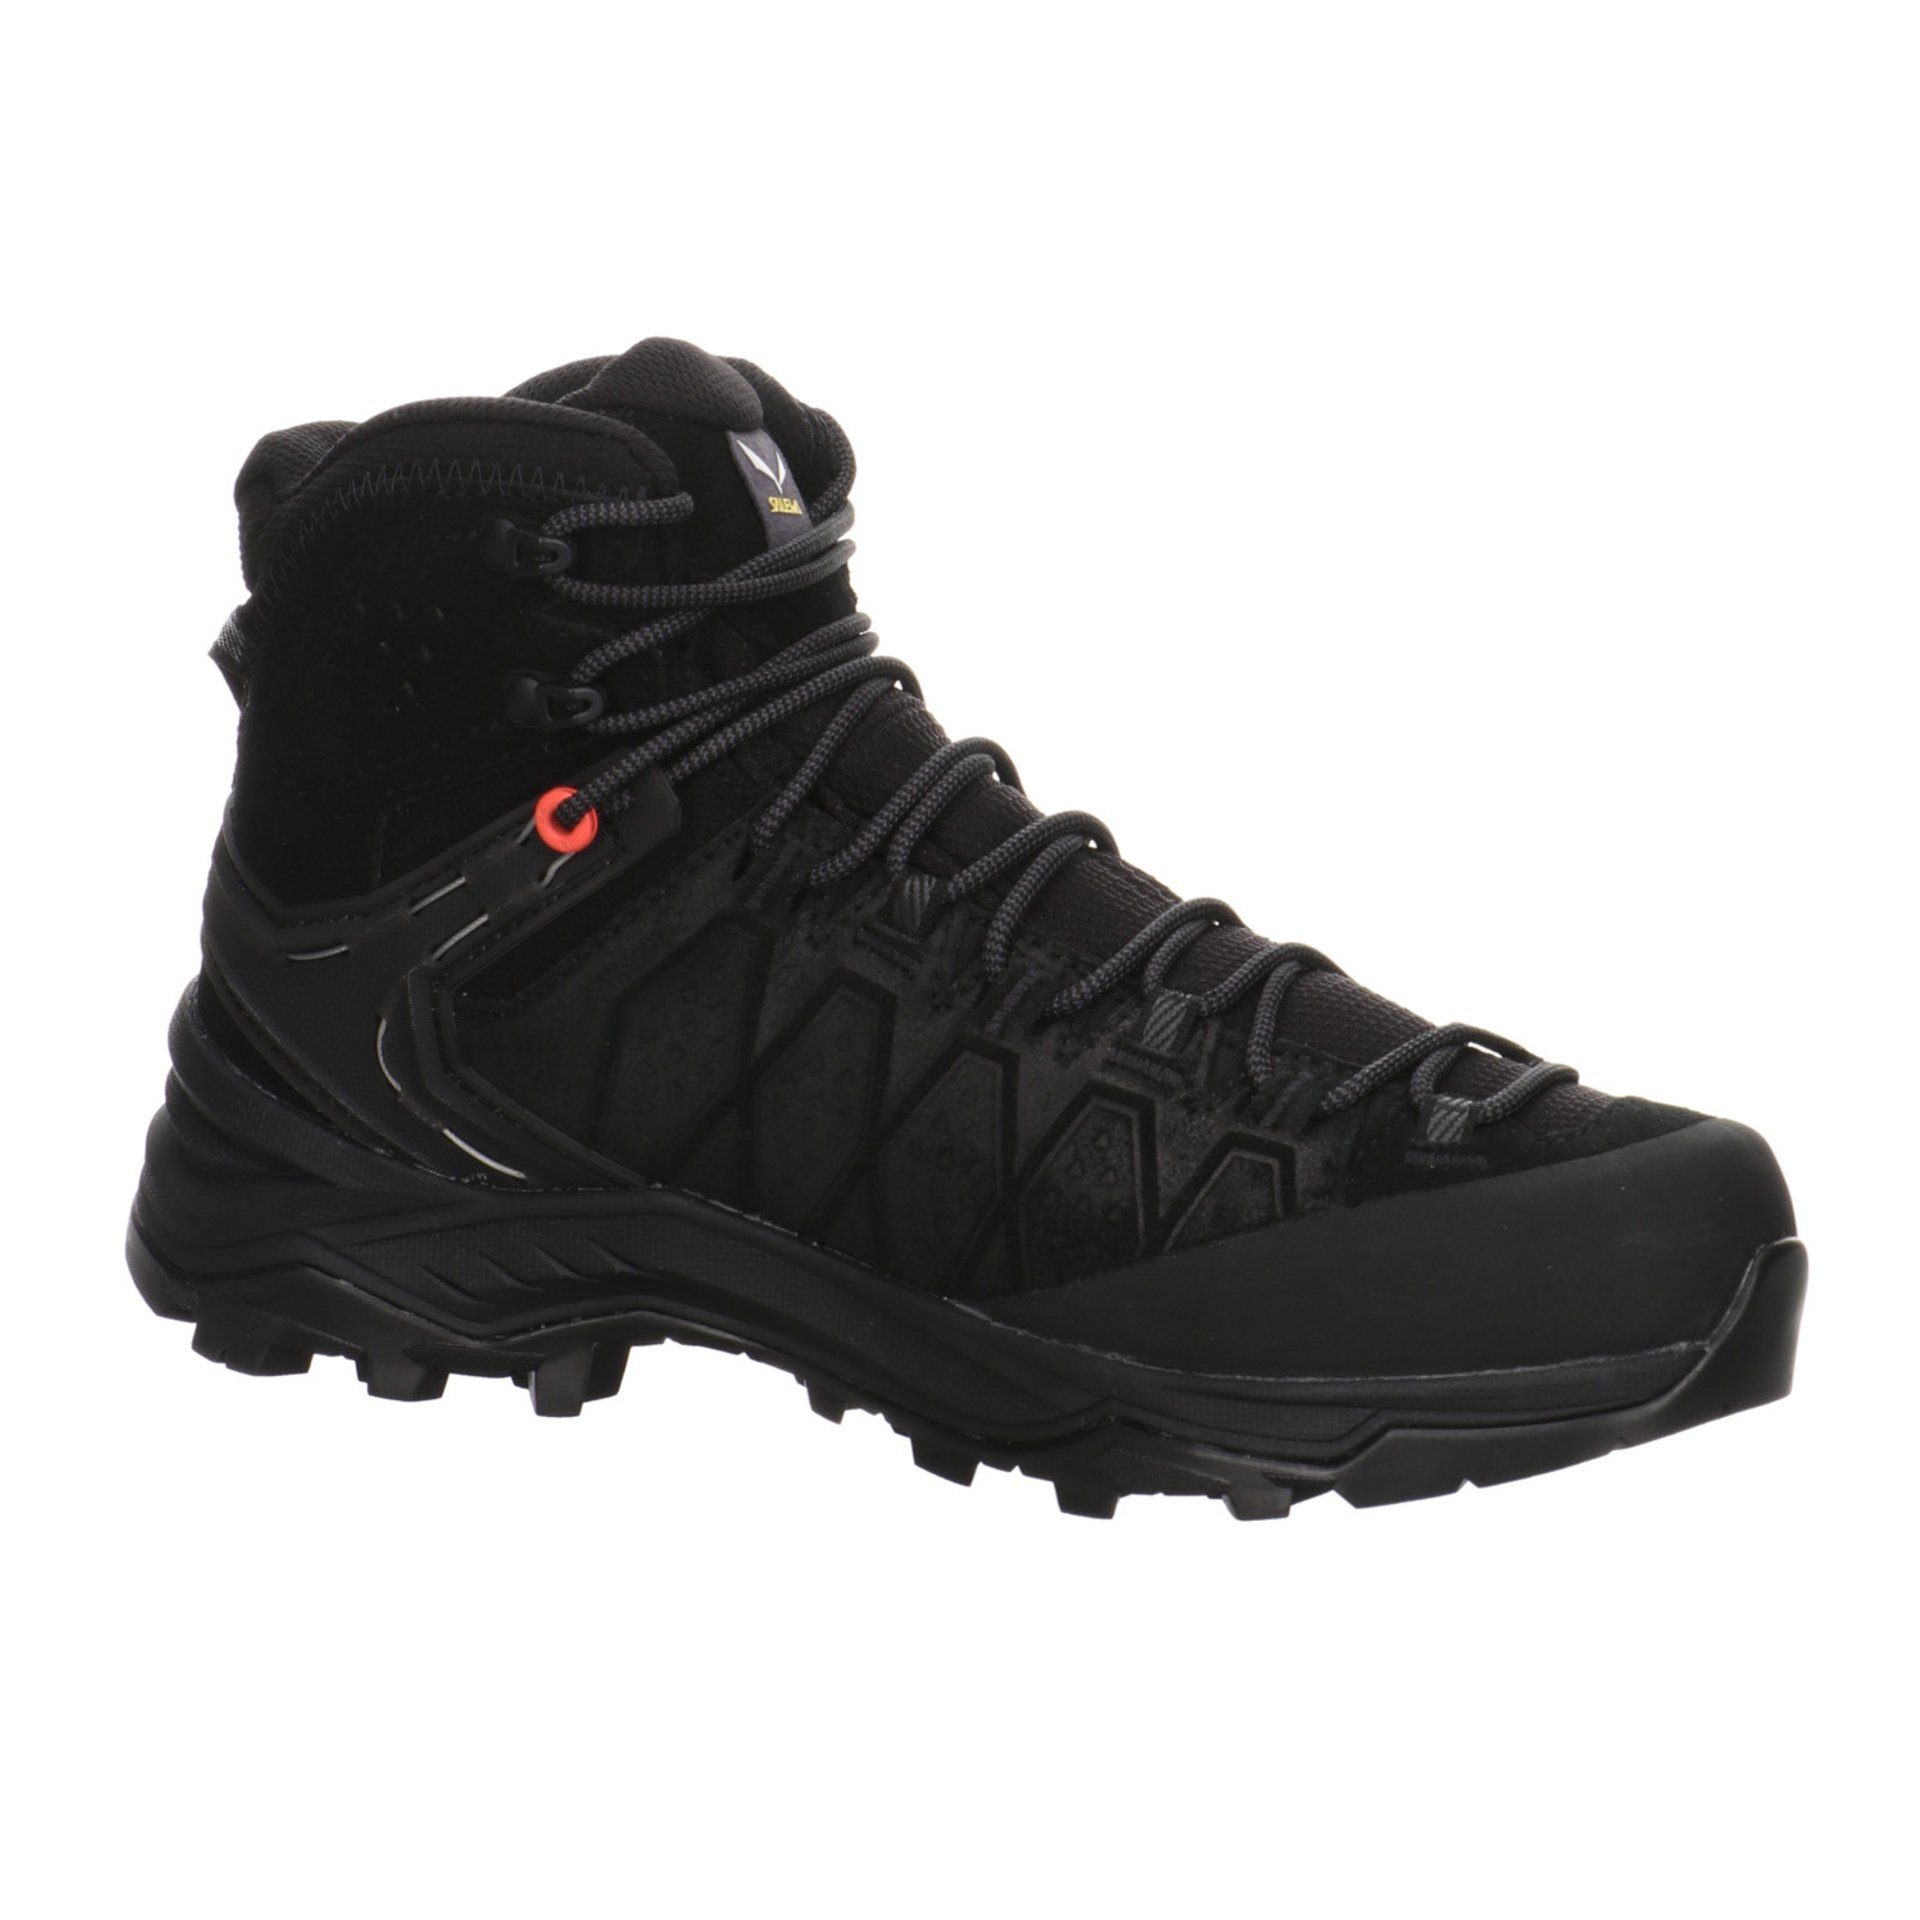 Salewa Damen Outdoor Leder-/Textilkombination 0971 Schuhe Black/Black Outdoorschuh